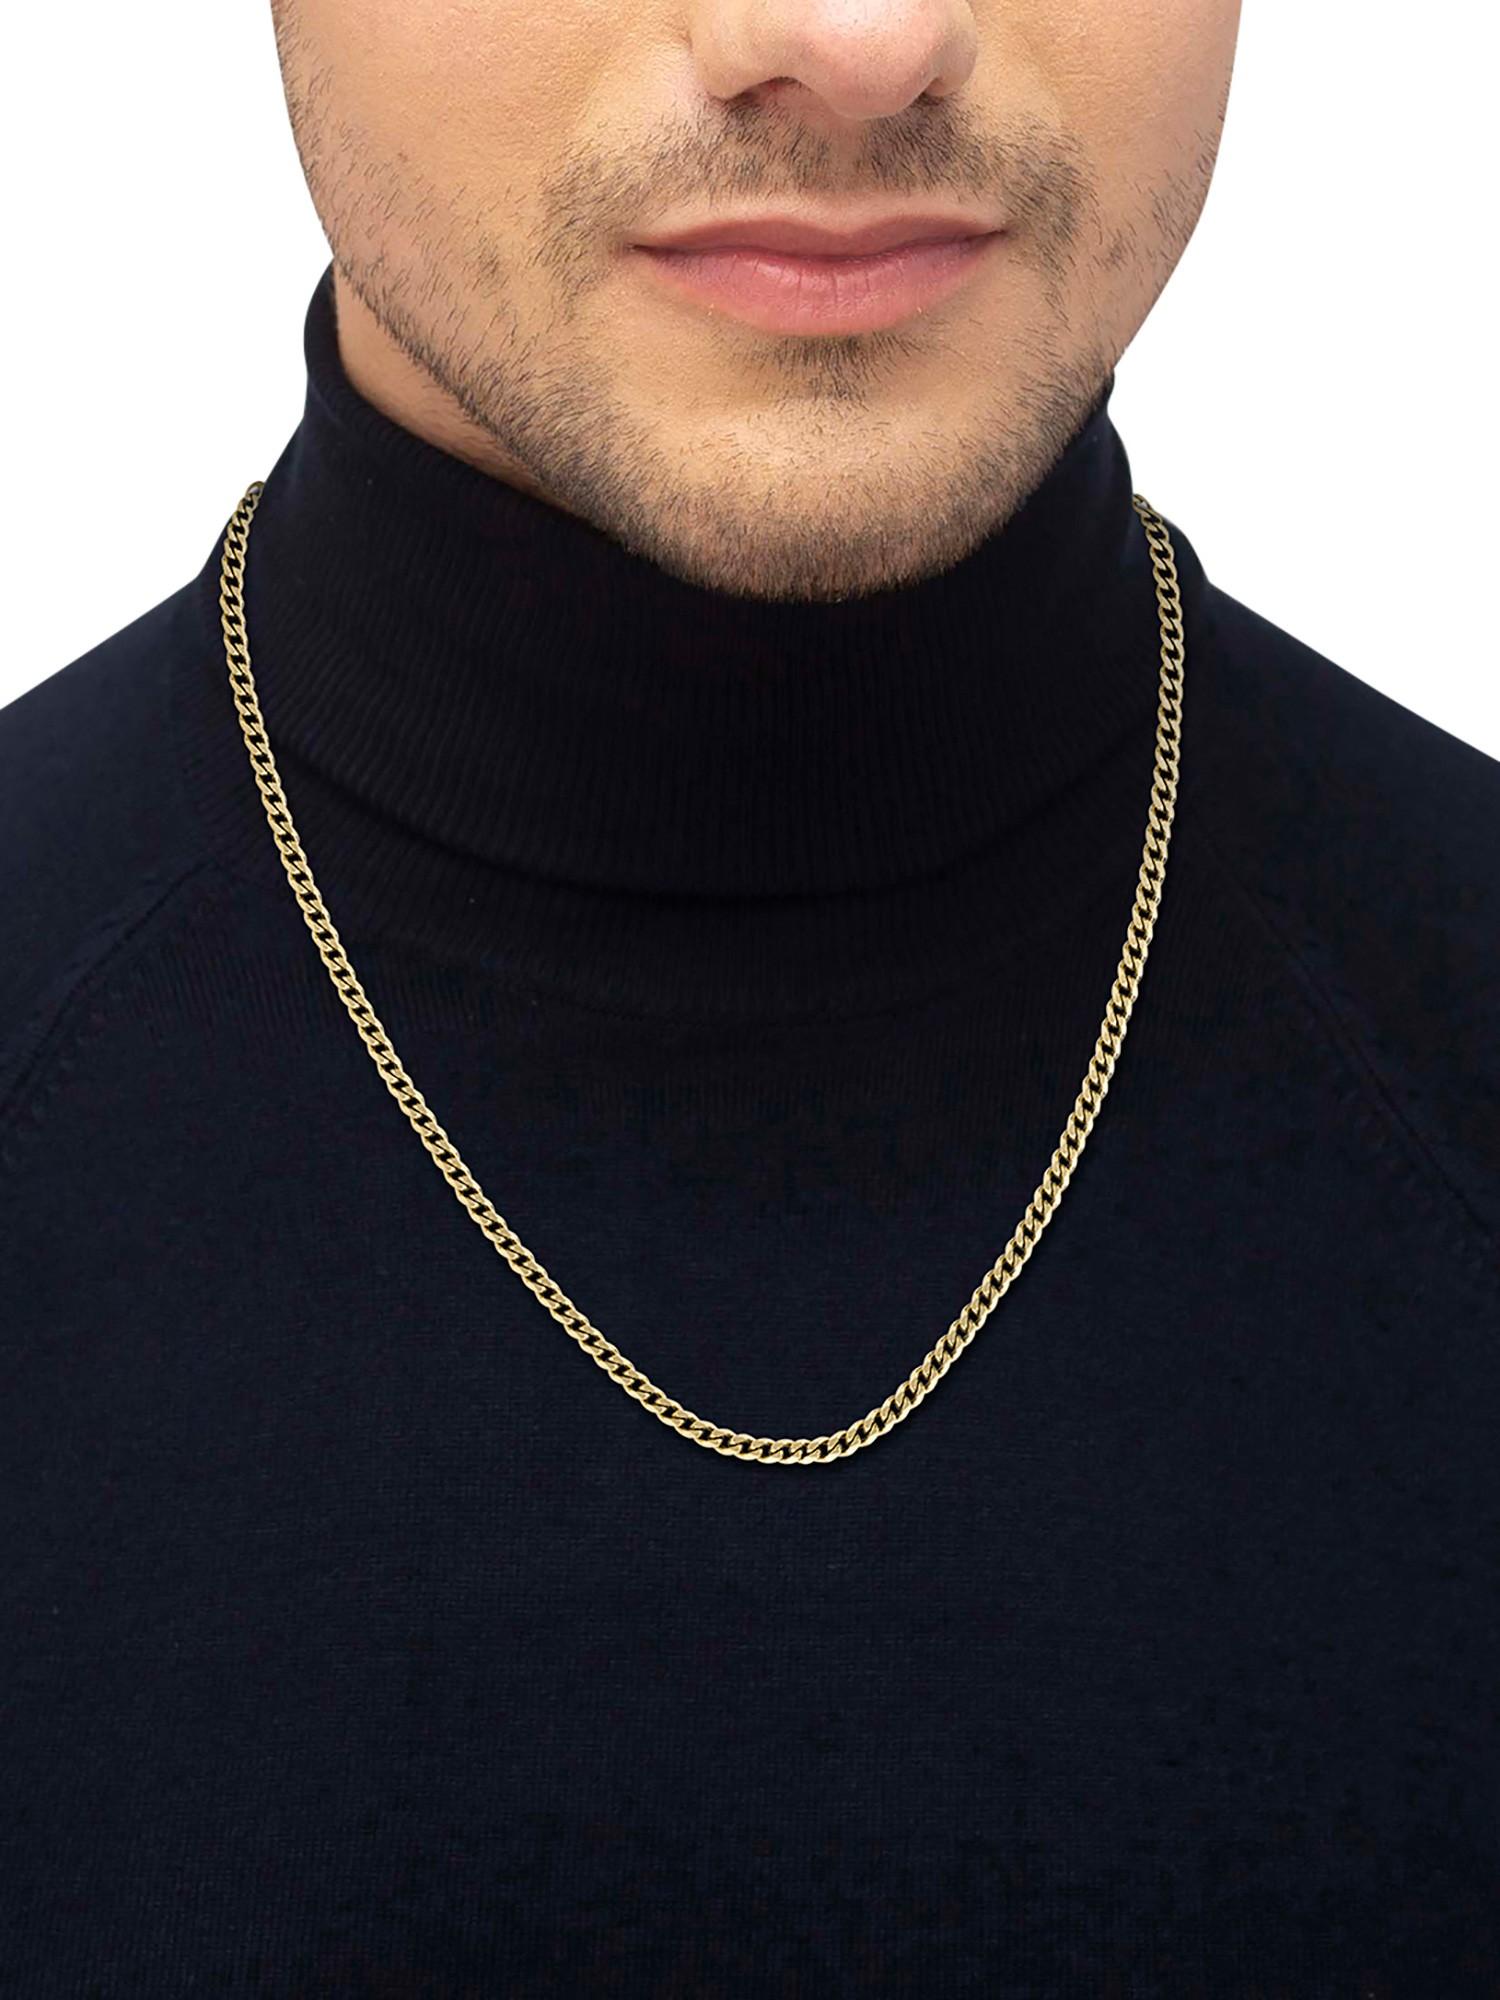 Buy Hugo Boss Men Sakis Stainless Steel Pendant With Chain - Pendant for Men  24180128 | Myntra